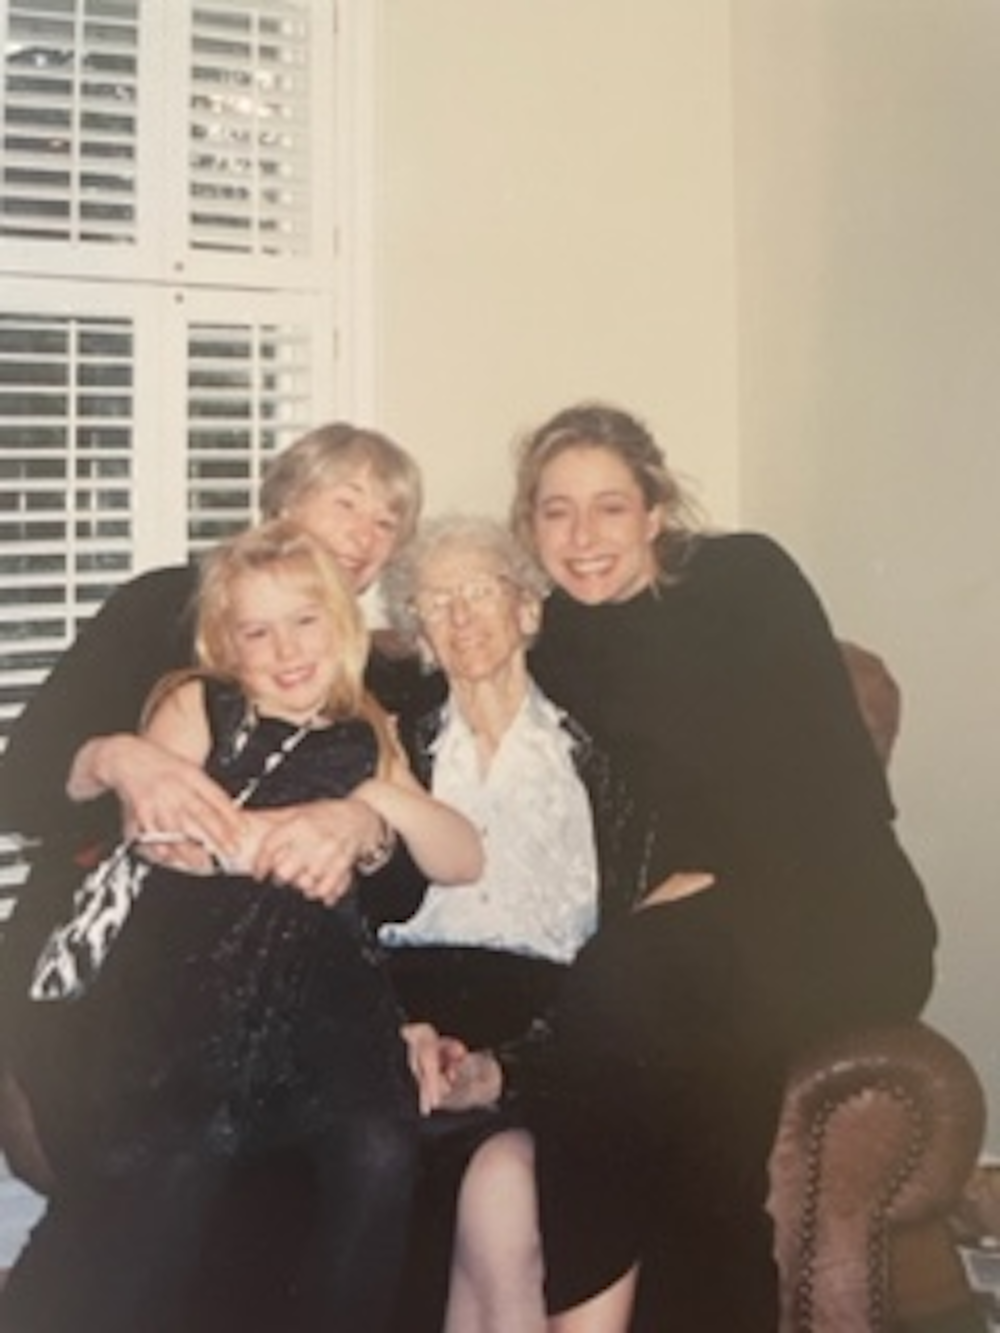 4 generations of "Pool" women Tina, Anna, Tina, Tianna